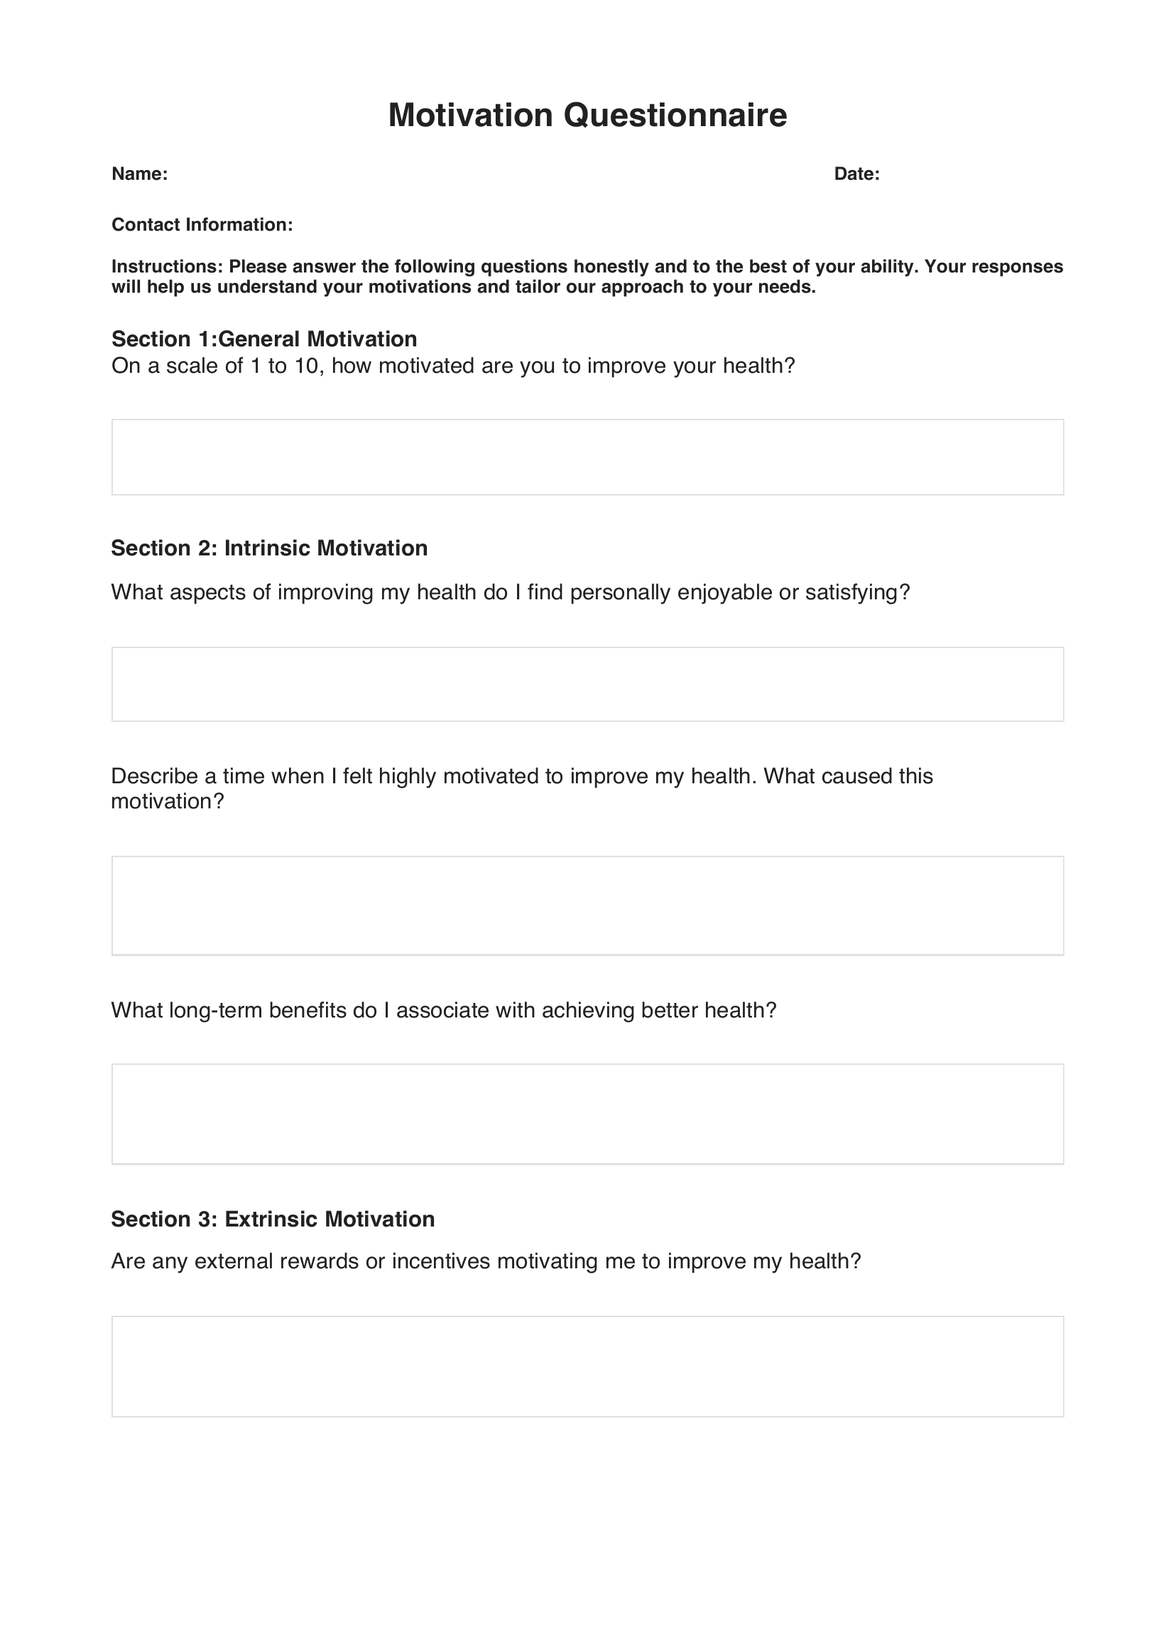 Motivation Questionnaires PDF Example